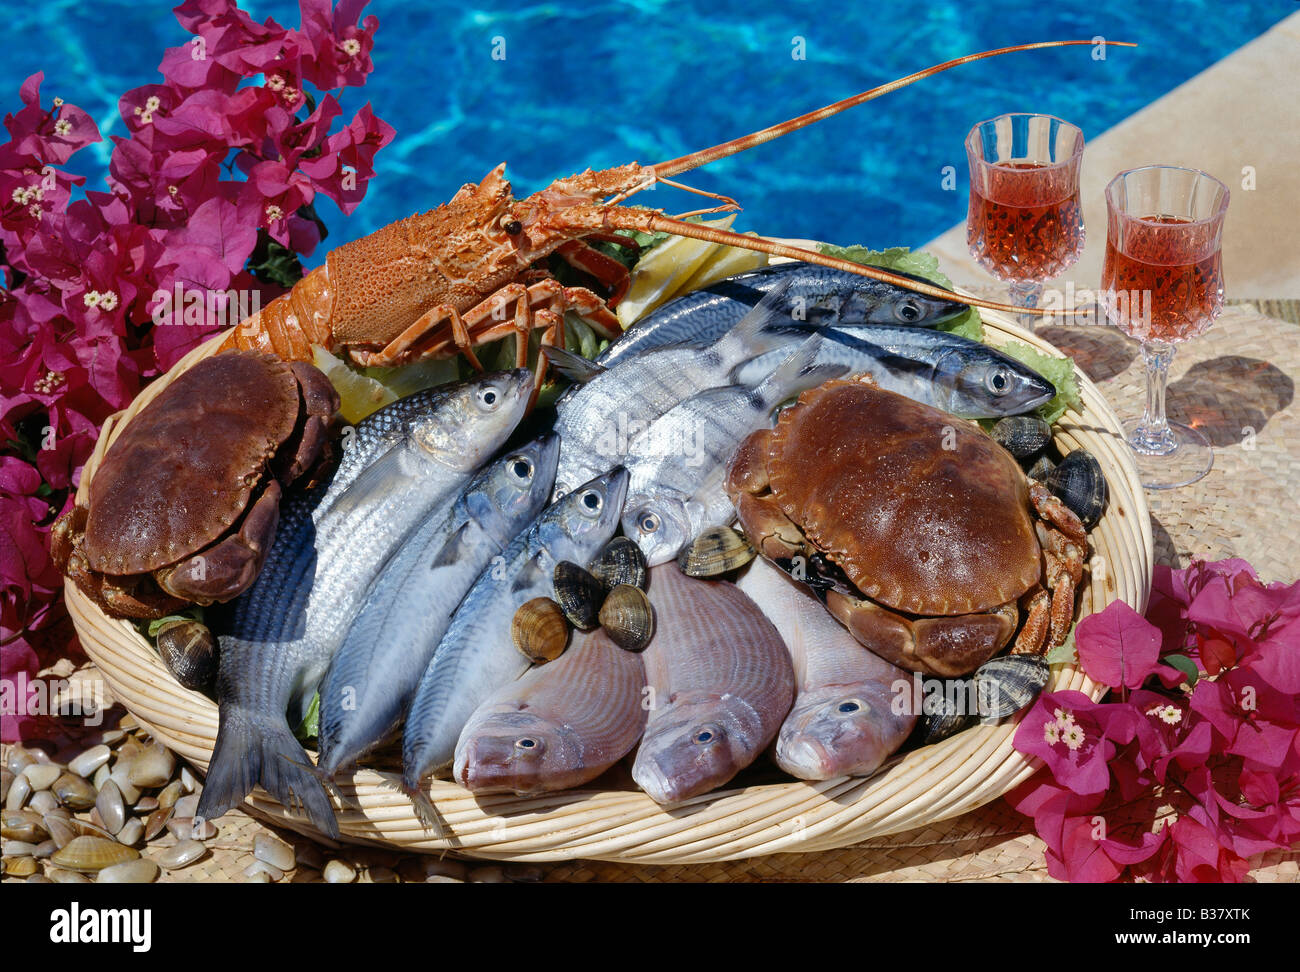 Meeresfrüchte, Fisch, Schalentiere, Meeresfrüchte & Krebse von einem Schwimmbad Stockfoto